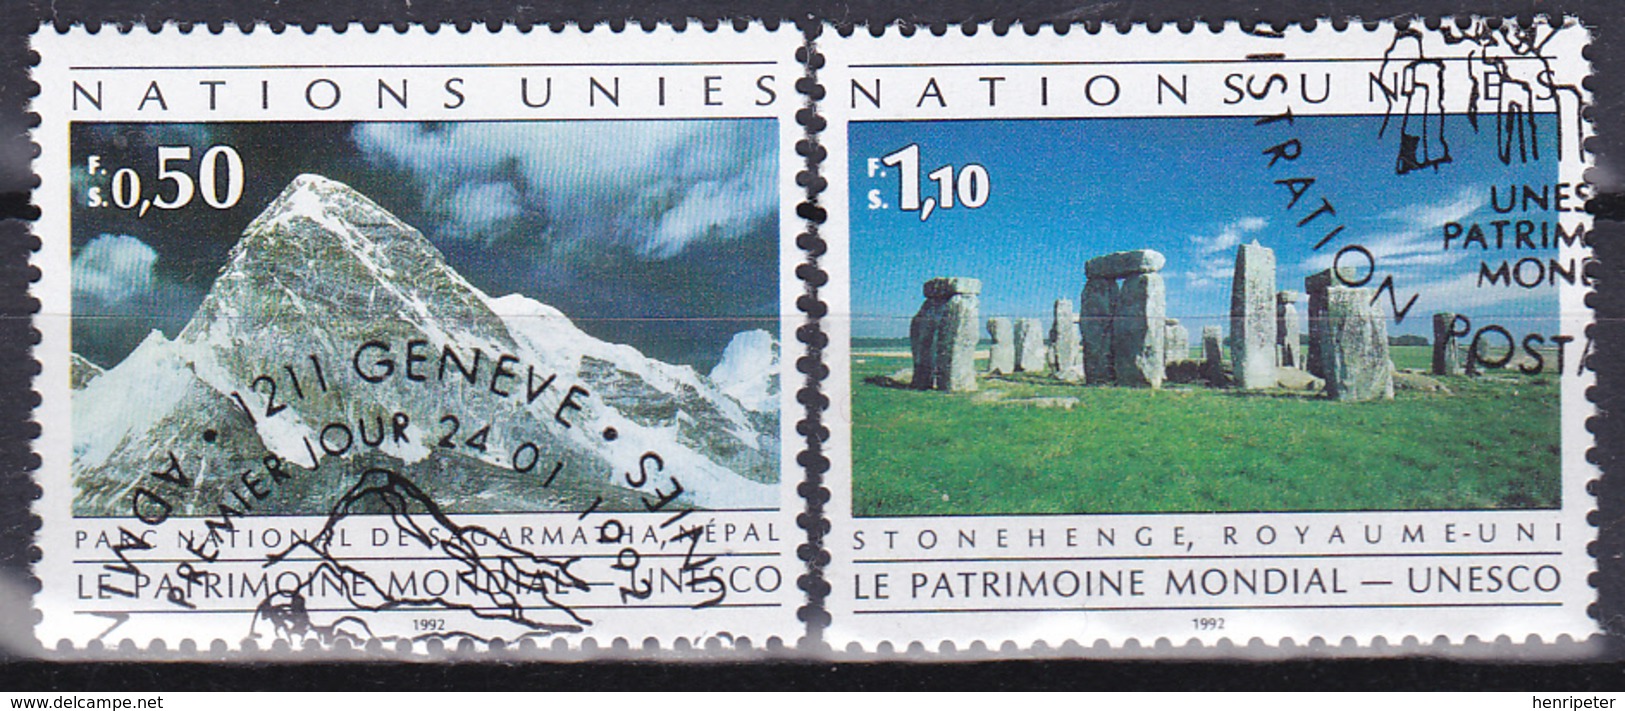 Trésors Du Patrimoine Mondial Hommage Aux Efforts De L'U.N.E.S.C.O. - N° 222-223 (Yvert) - NATIONS UNIES Genève 1992 - Used Stamps